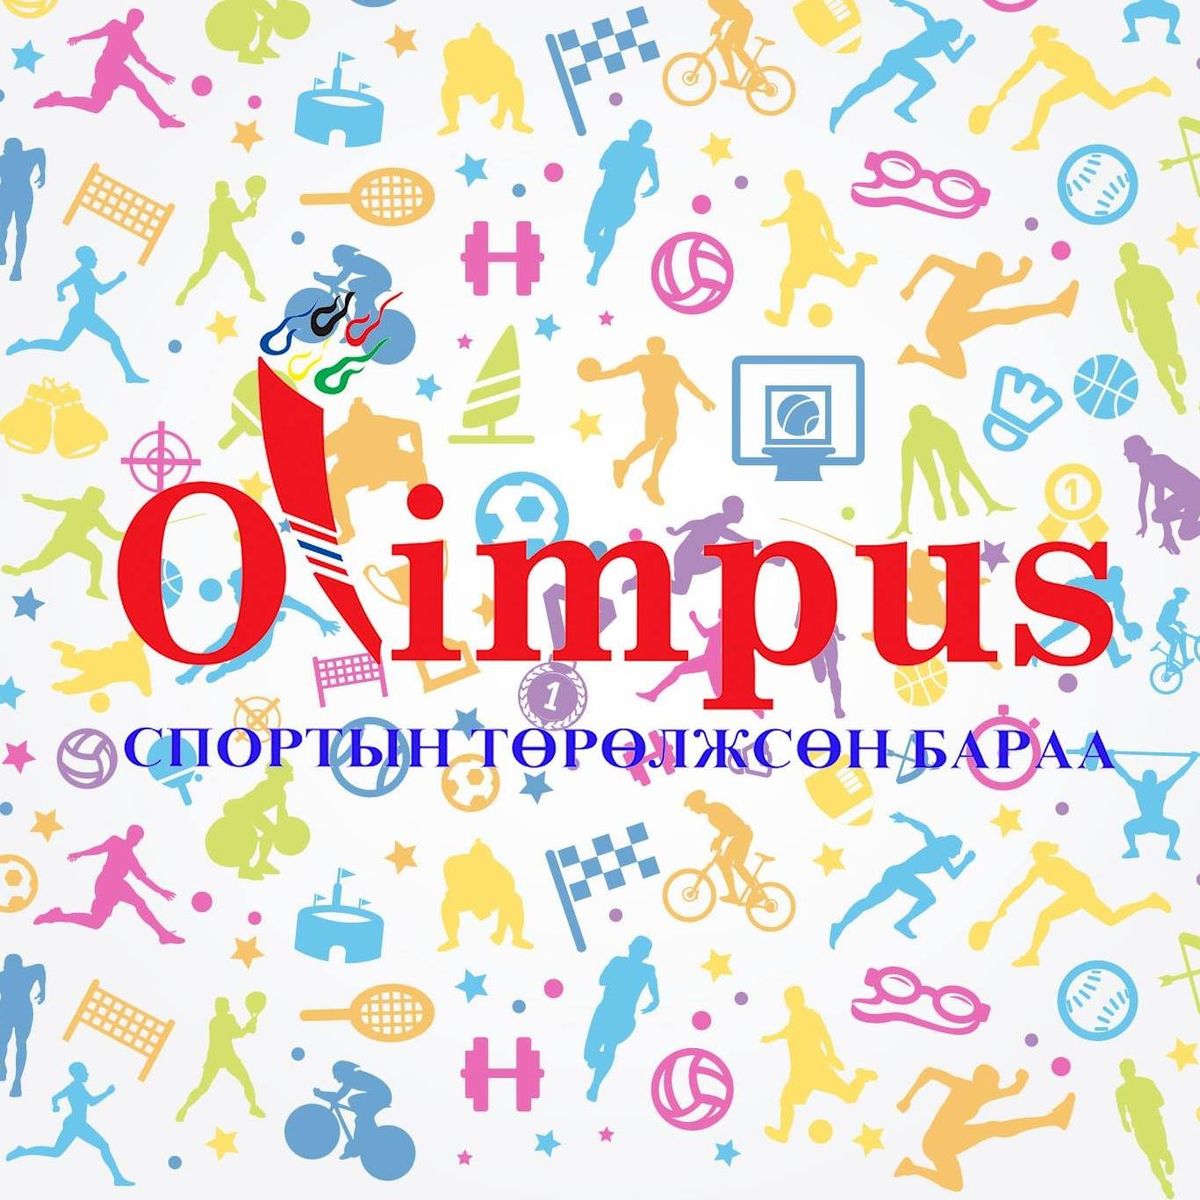 Msports app-аар дамжуулан спорт бараа бүтээгдэхүүний "Olympus" дэлгүүрээс хөнгөлөлттэй үнээр худалдан авалт хийгээрэй.